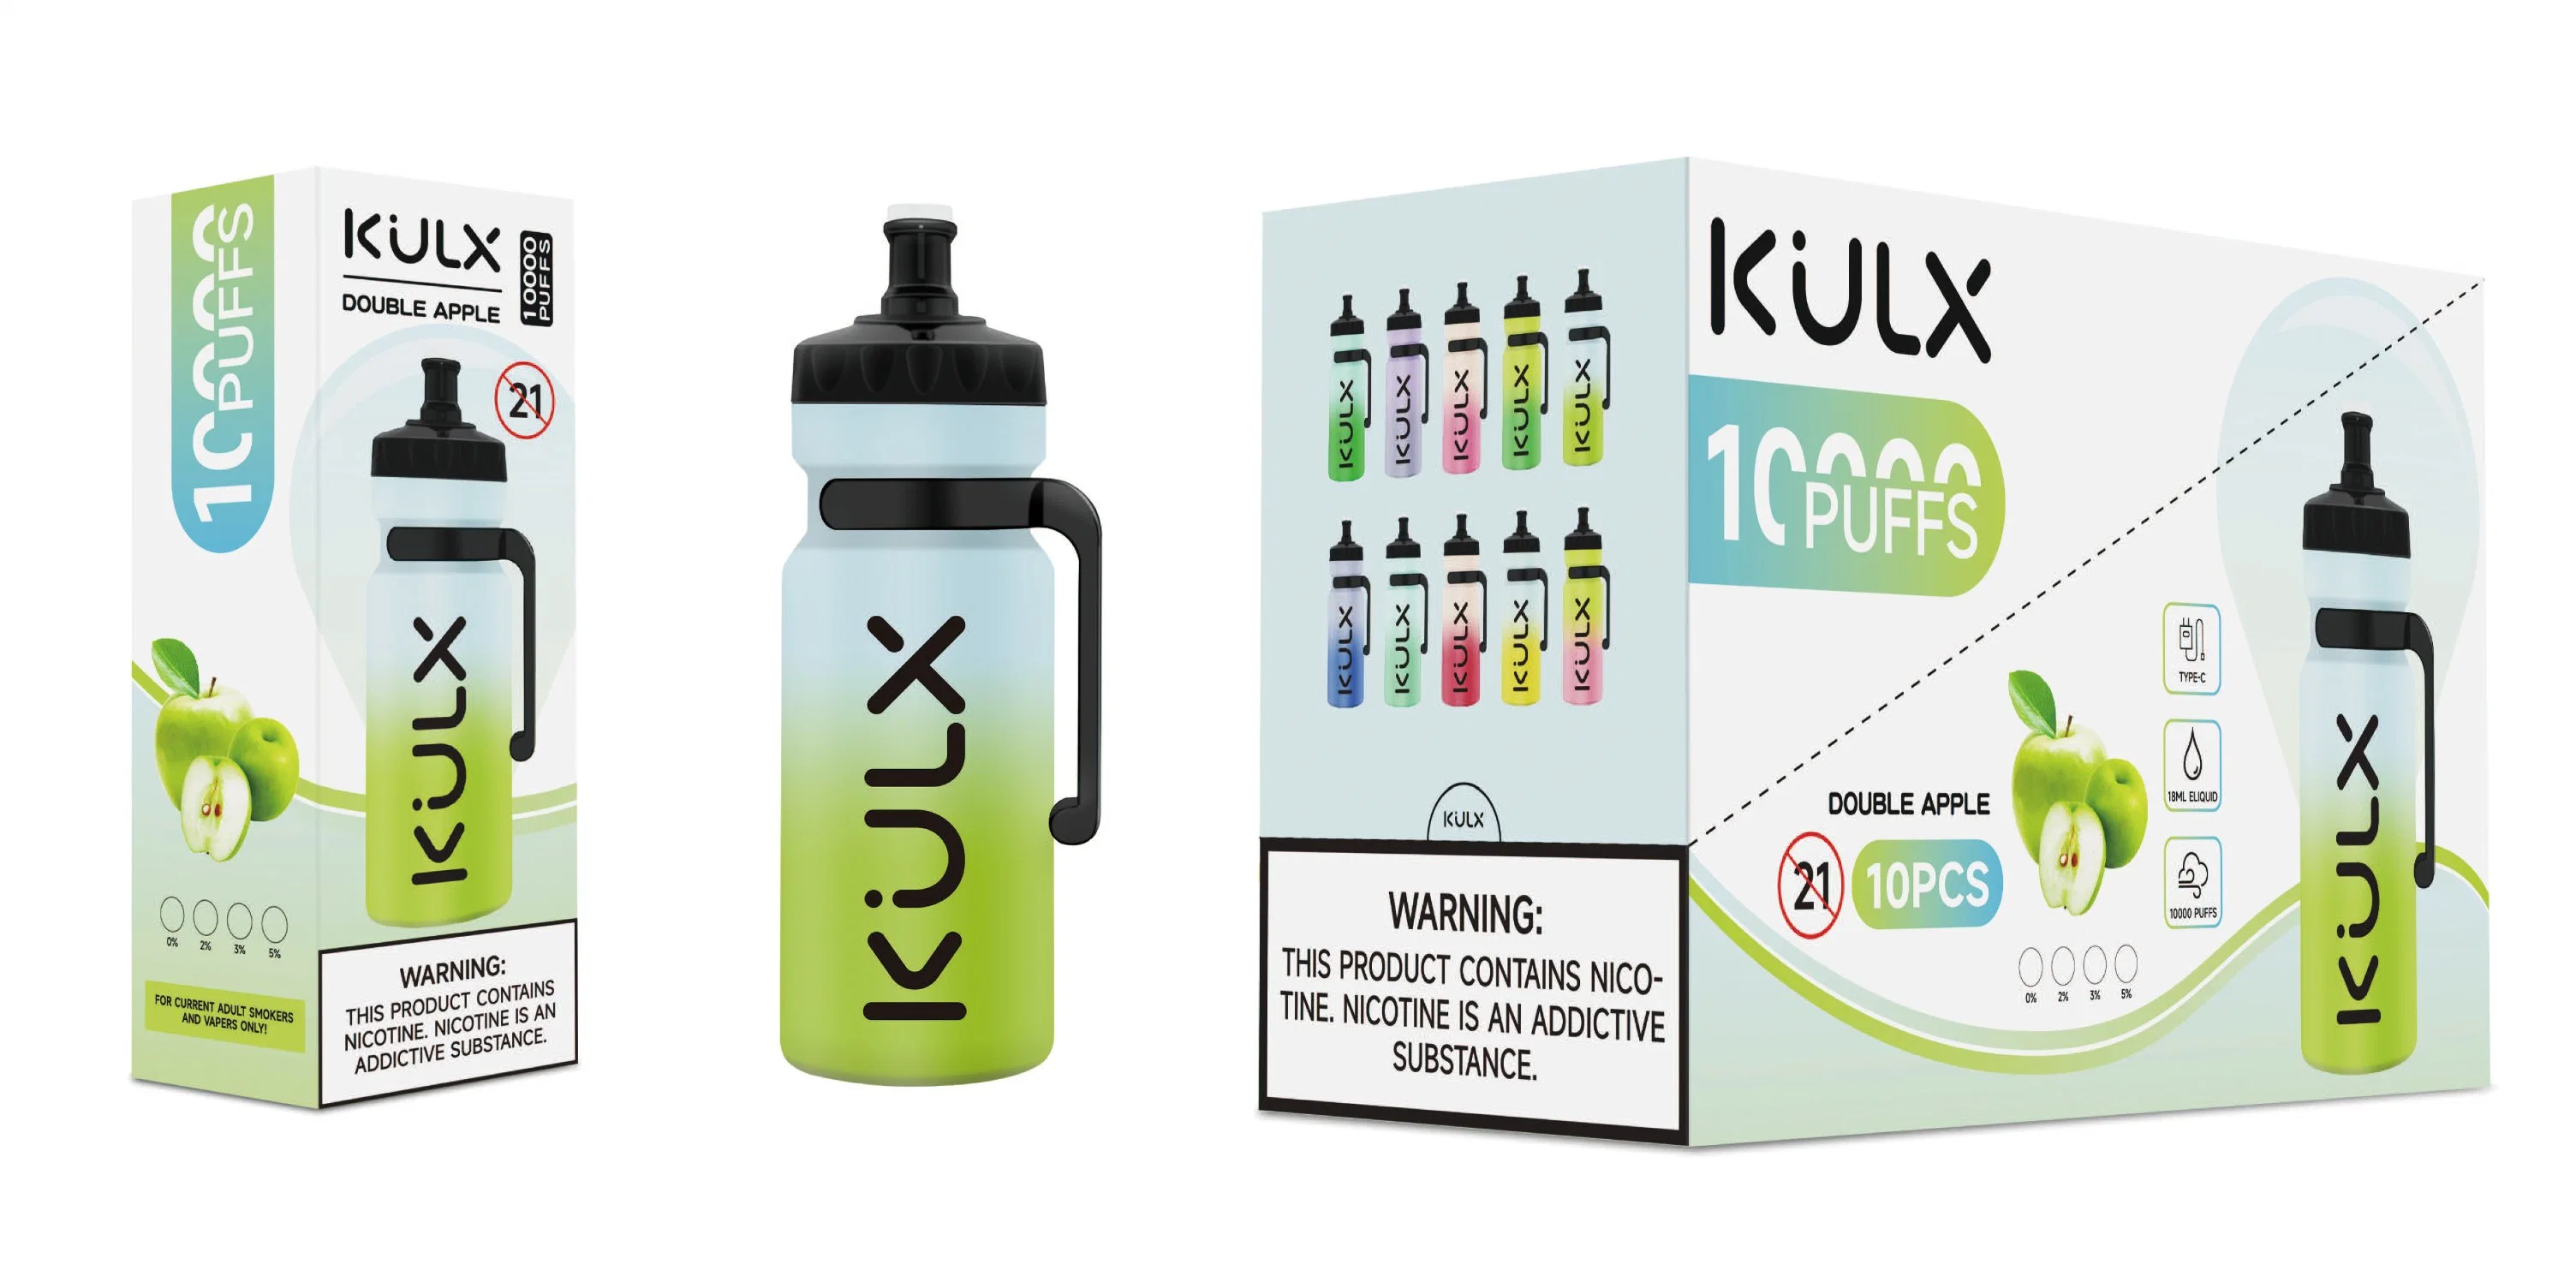 Original Kulx 10000 Puffs 18ml Prefilled 600mAh Rechargeable Battery E Cigarette Pen Wholesale/Supplier Disposable/Chargeable Vape